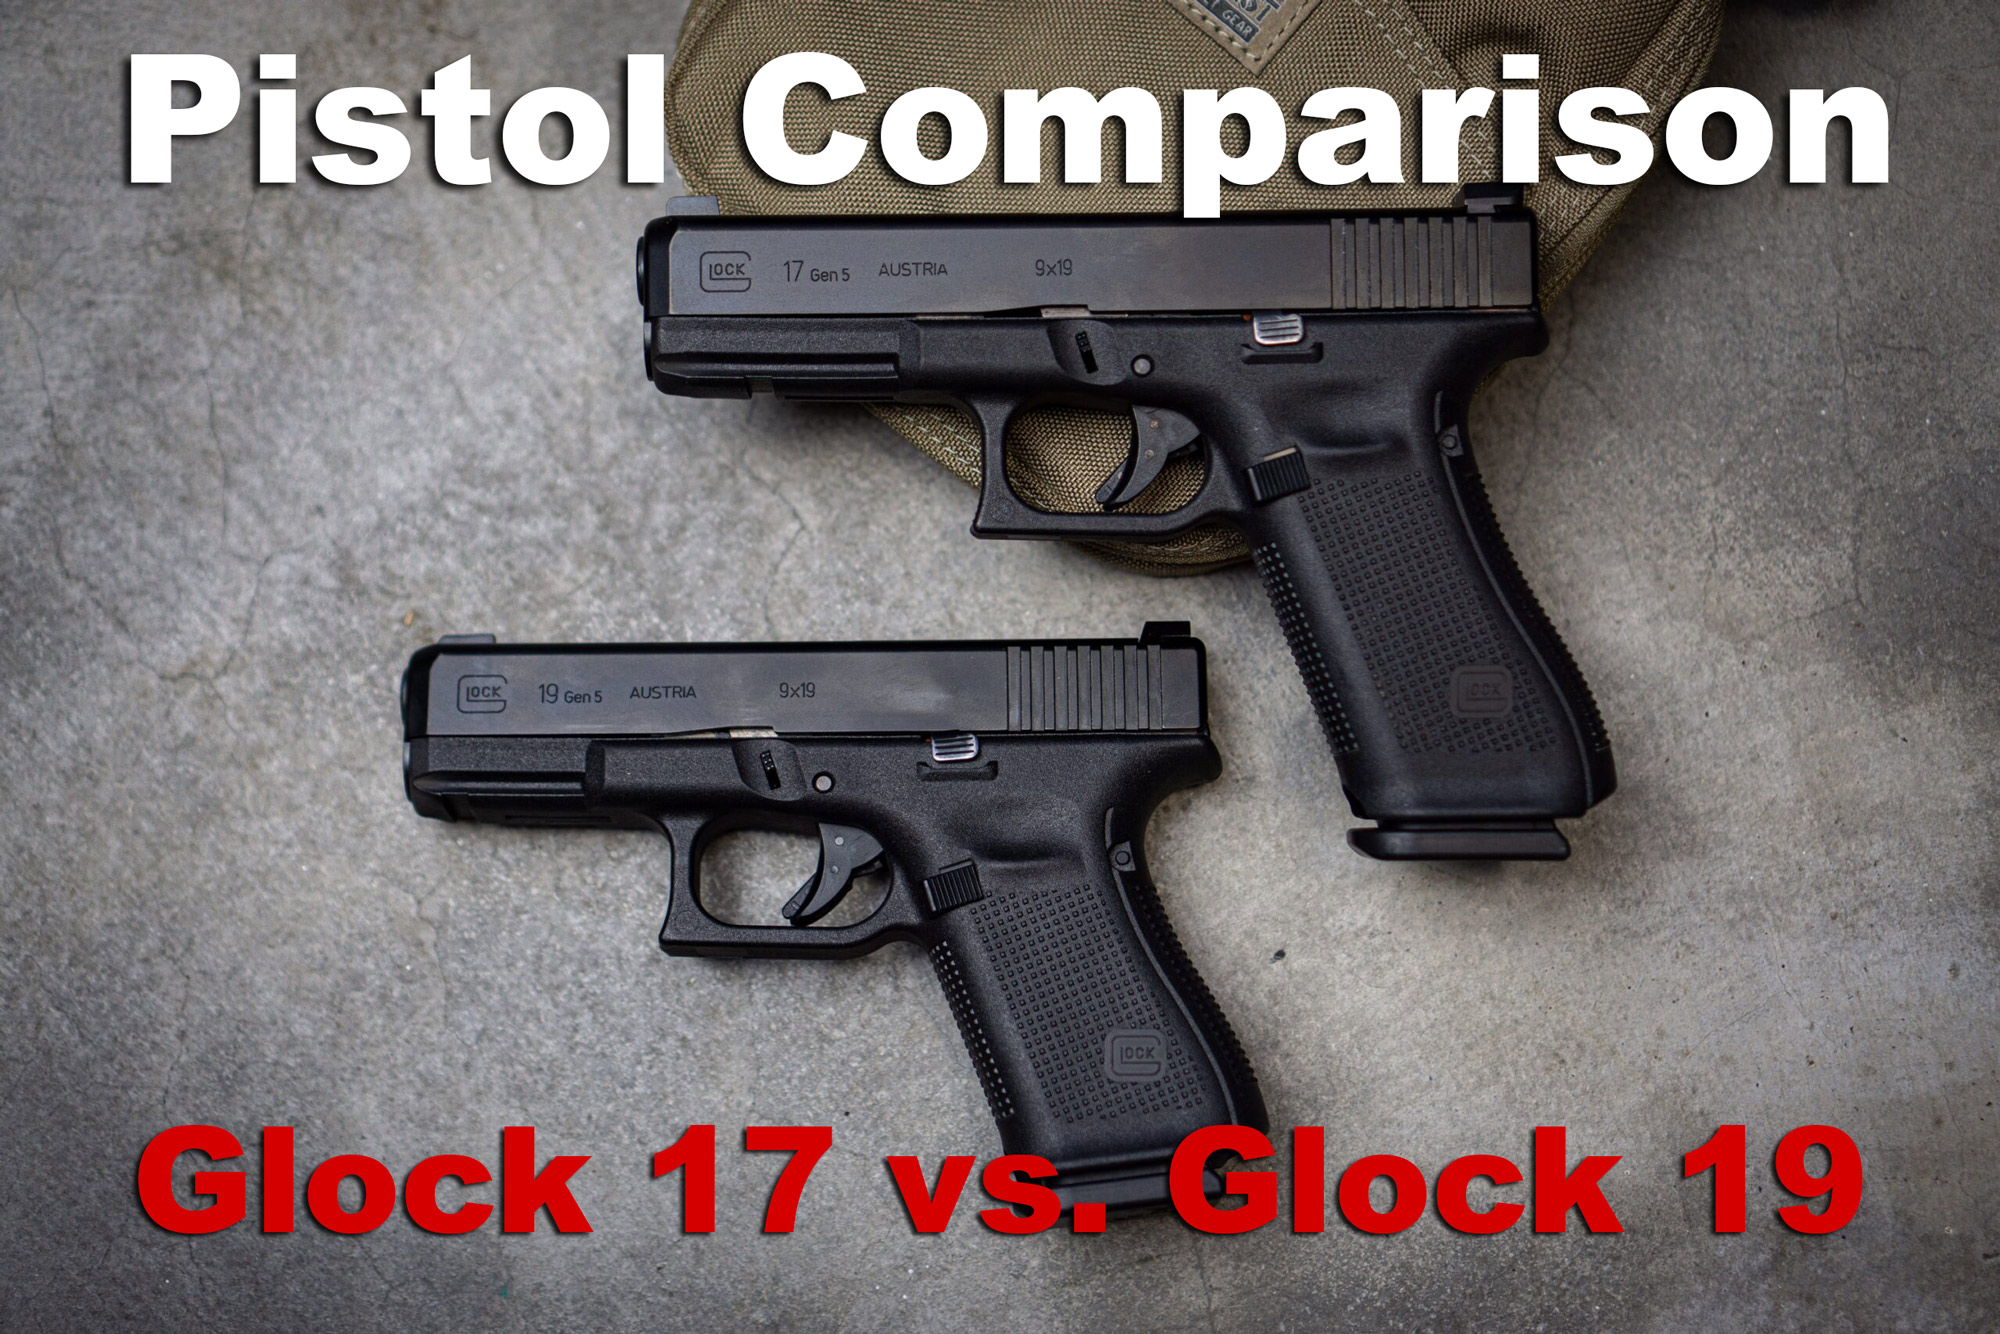 Shooting Review: The Glock 19 Gen 5